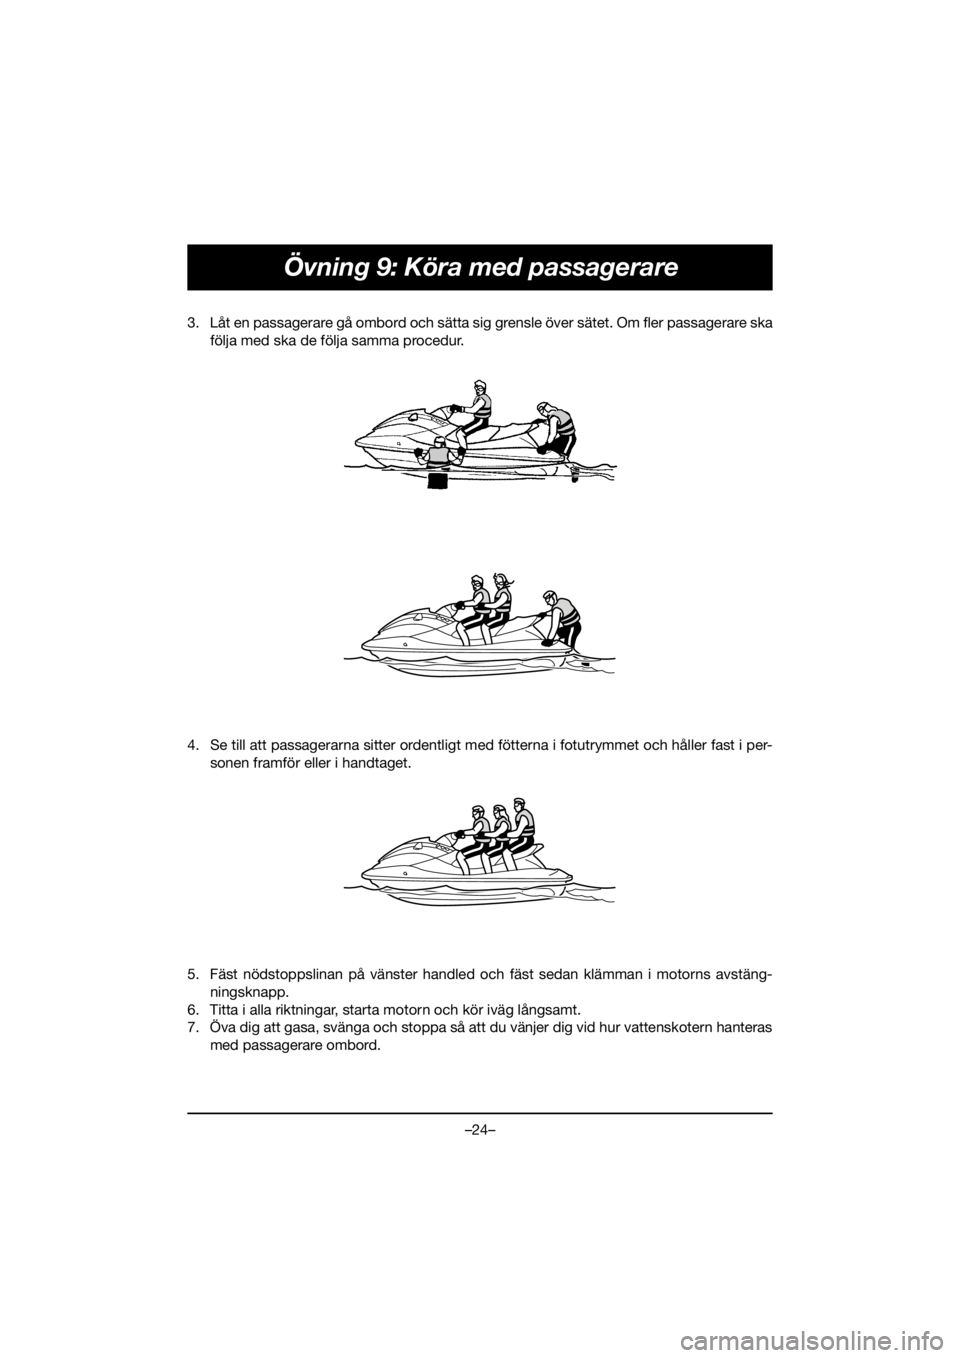 YAMAHA VX DELUXE 2021  Bruksanvisningar (in Swedish) –24–
Övning 9: Köra med passagerare
3. Låt en passagerare gå ombord och sätta sig grensle över sätet. Om fler passagerare ska
följa med ska de följa samma procedur. 
4. Se till att passag